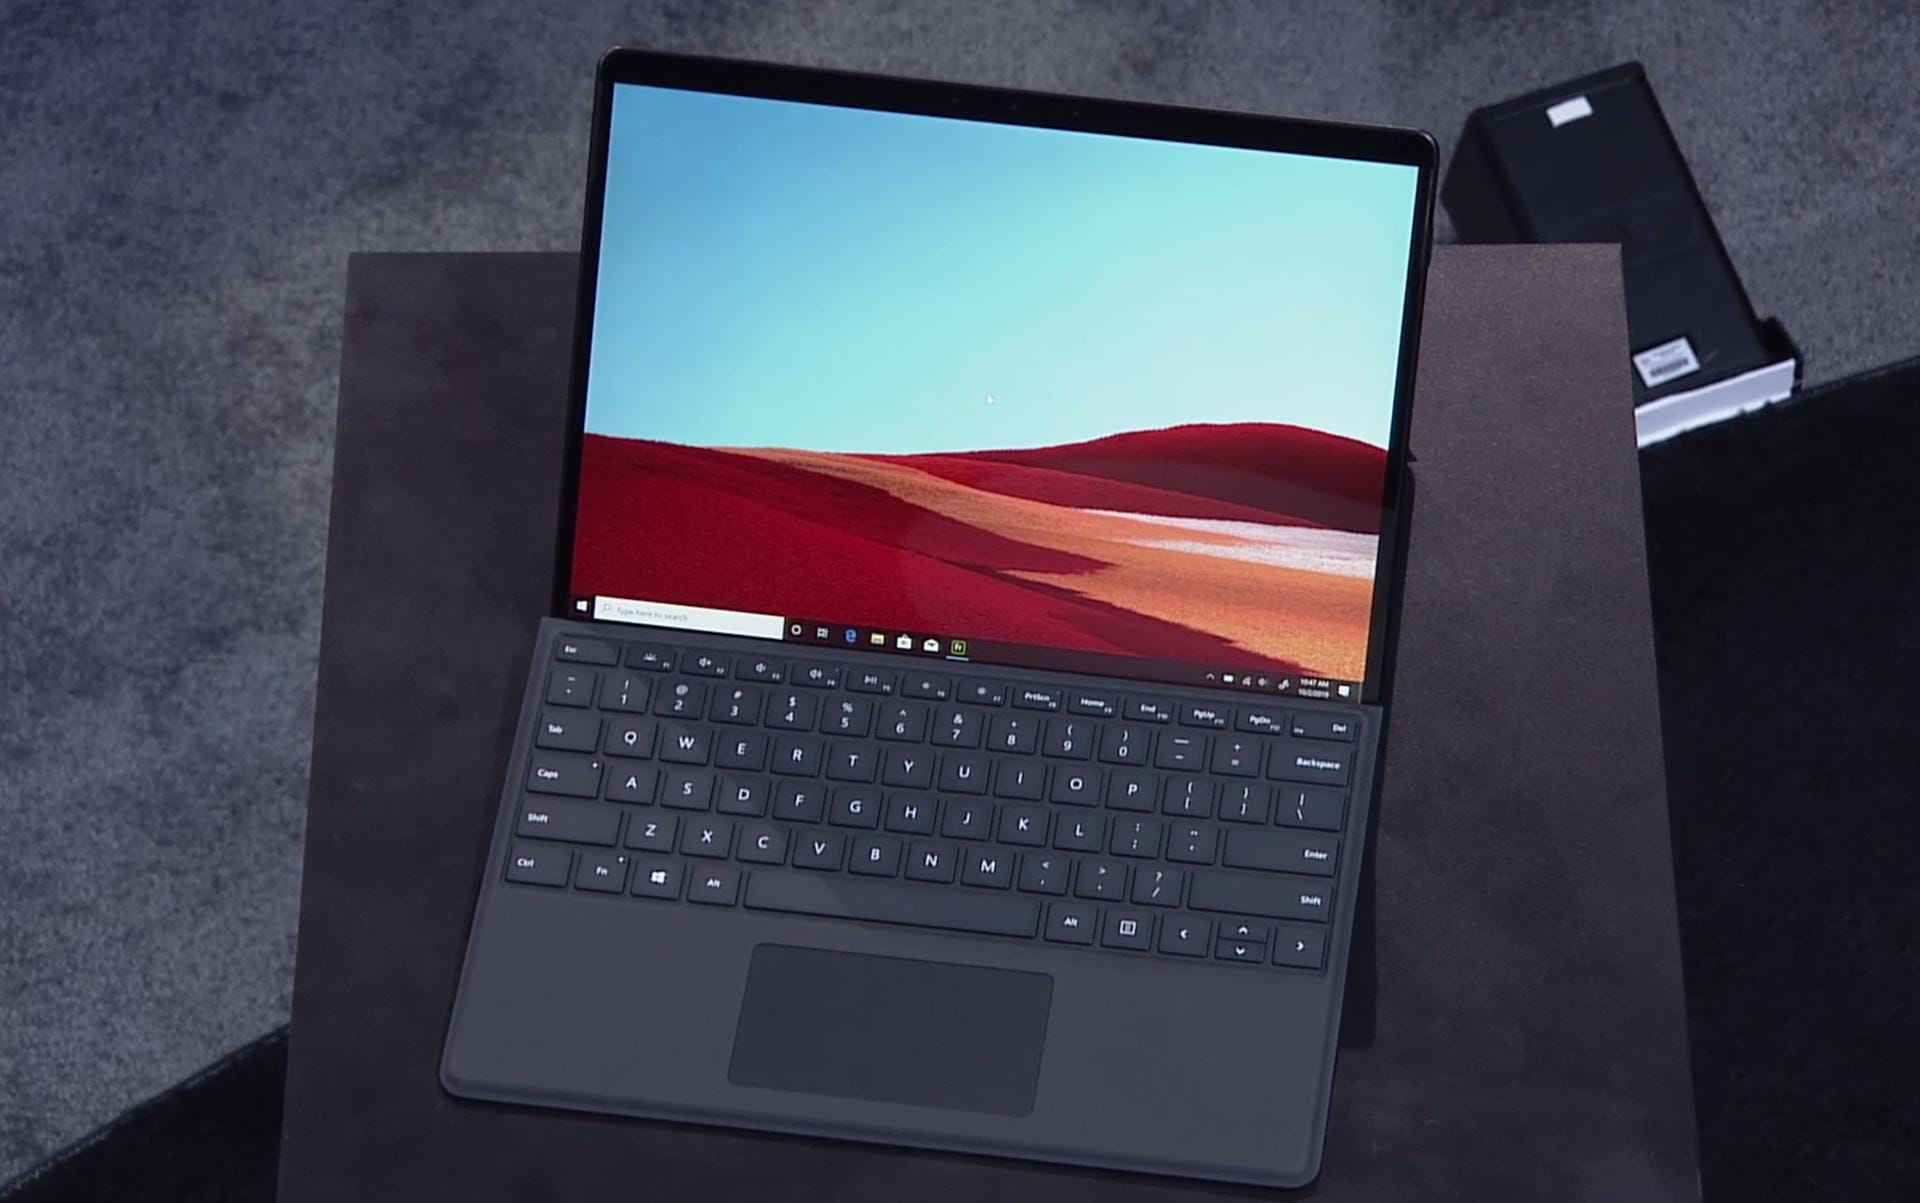 Auch eine Neuheit: das Surface Pro X. Die Besonderheit ist hier der Chip, der auf ARM-Architektur basiert. Somit soll das Surface Pro X schneller, leichter und eine bessere Akkulaufzeit als das Surface Pro 6 haben. Das Gerät kommt mit einer Bildschirmdiagonale von 13 Zoll und hat eine Auflösung von 2.880 zu 1.920 Pixel (267 ppi). Das Pro X ist 5,3 Millimeter dünn und wiegt etwa 760 Gramm. Als Preis nennt Microsoft 999 Dollar.